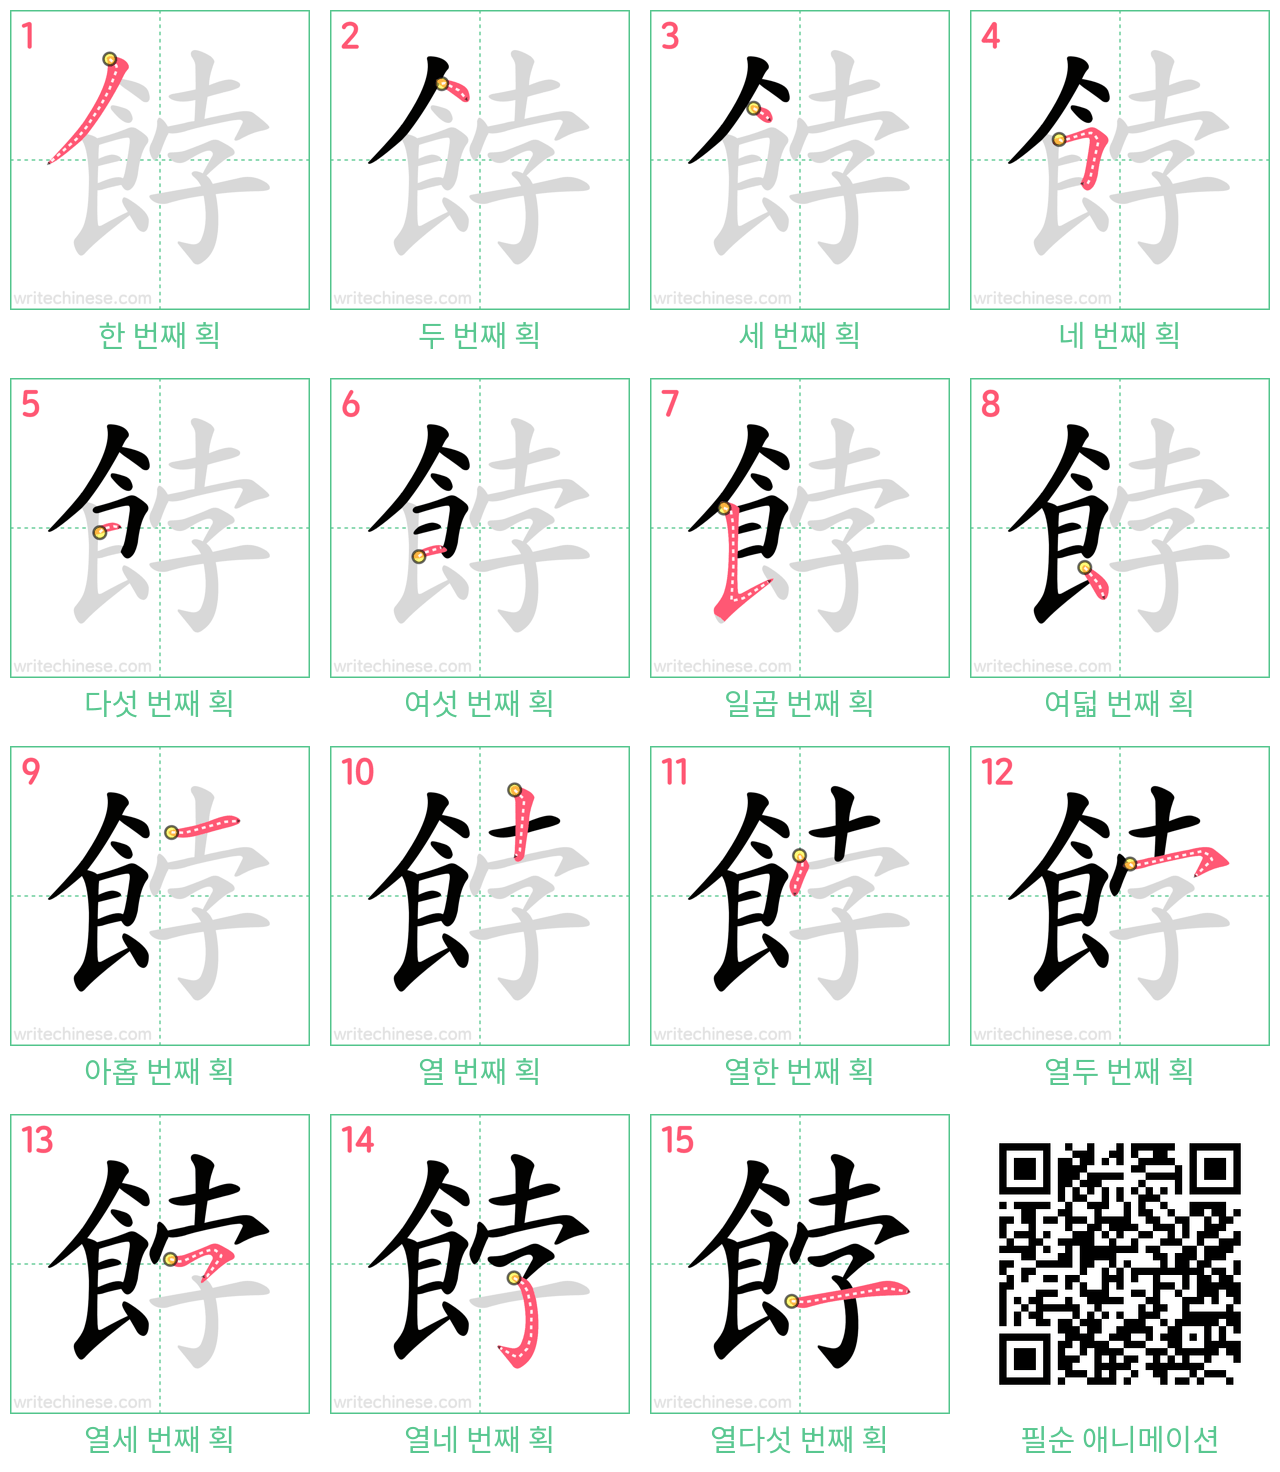 餑 step-by-step stroke order diagrams